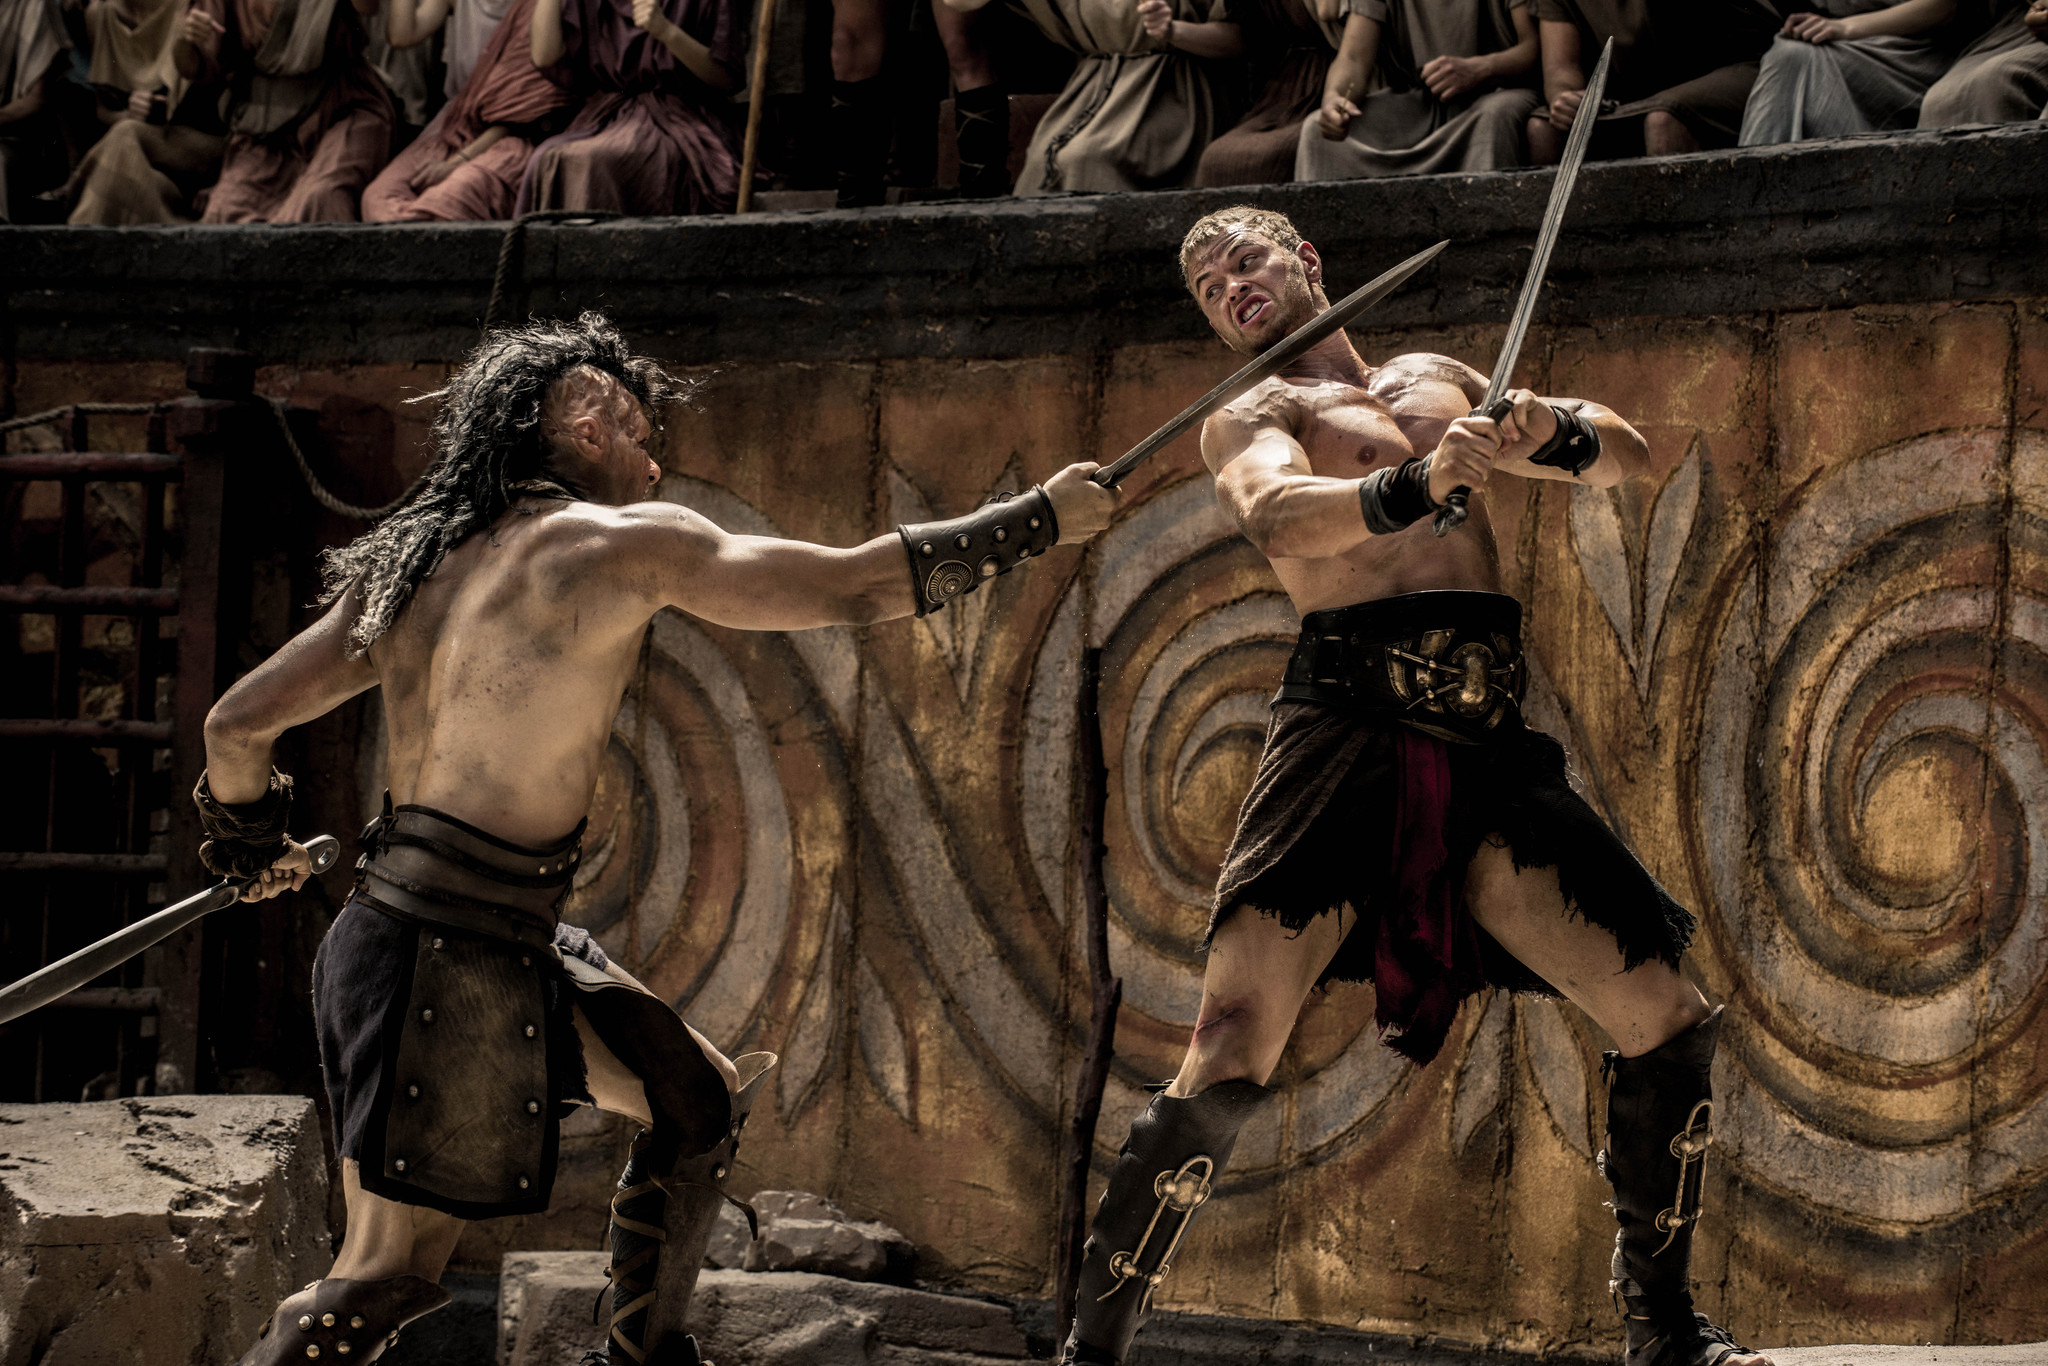 Still of Kellan Lutz in The Legend of Hercules (2014)